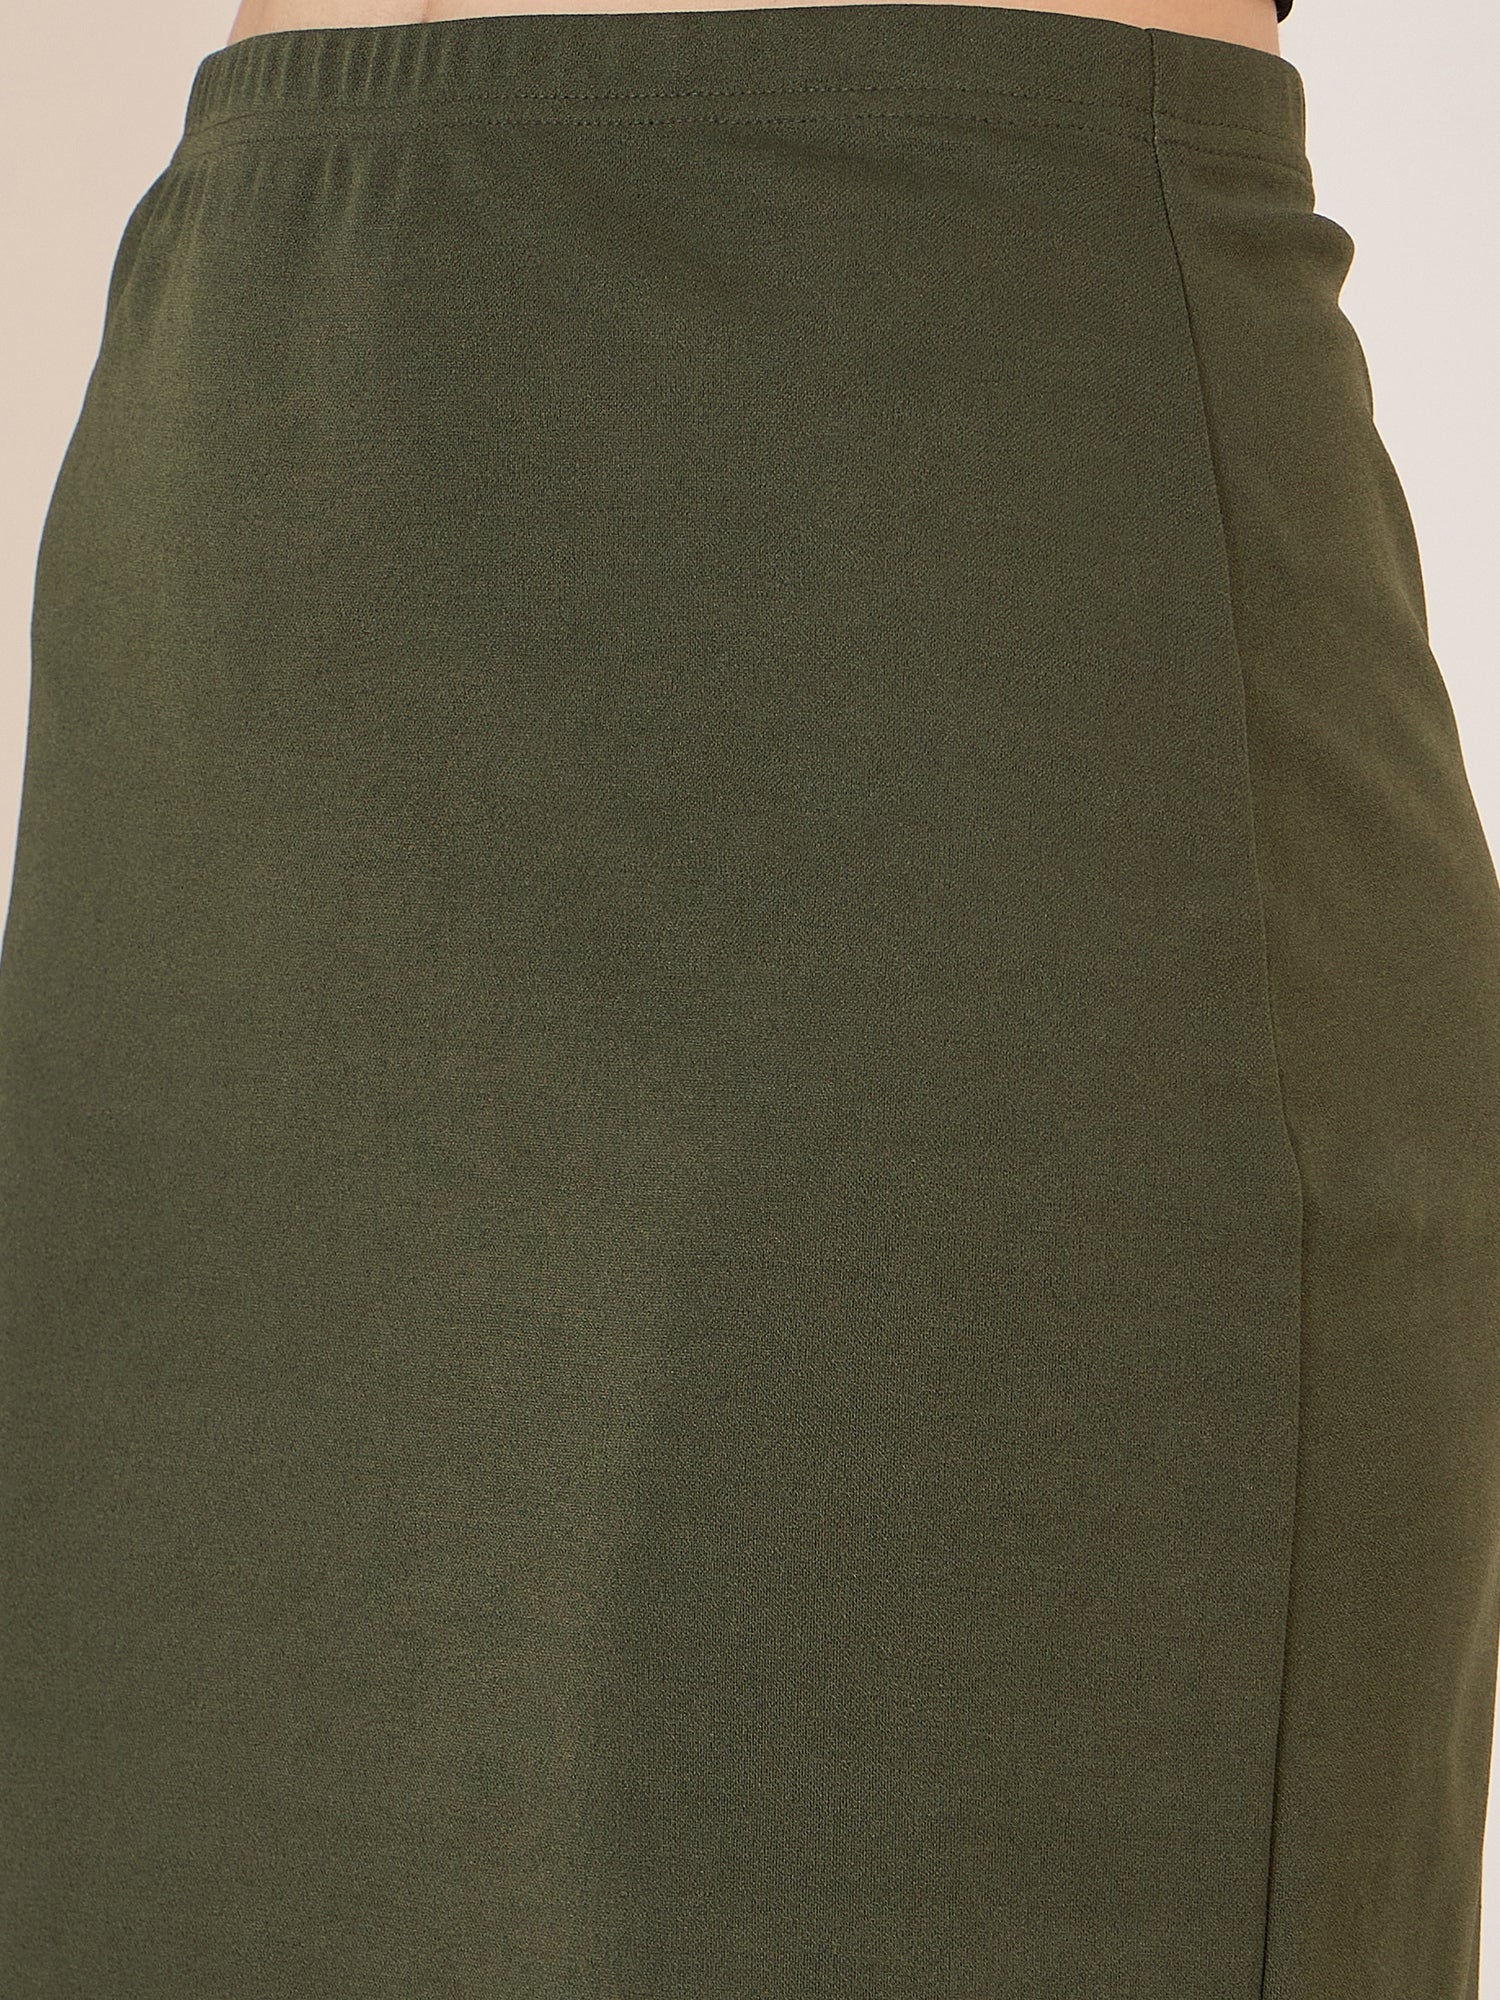 Berrylush Women Solid Olive Green High-Rise Elastic Waist Slip-On Straight Hem Knitted Pencil Mini Skirt